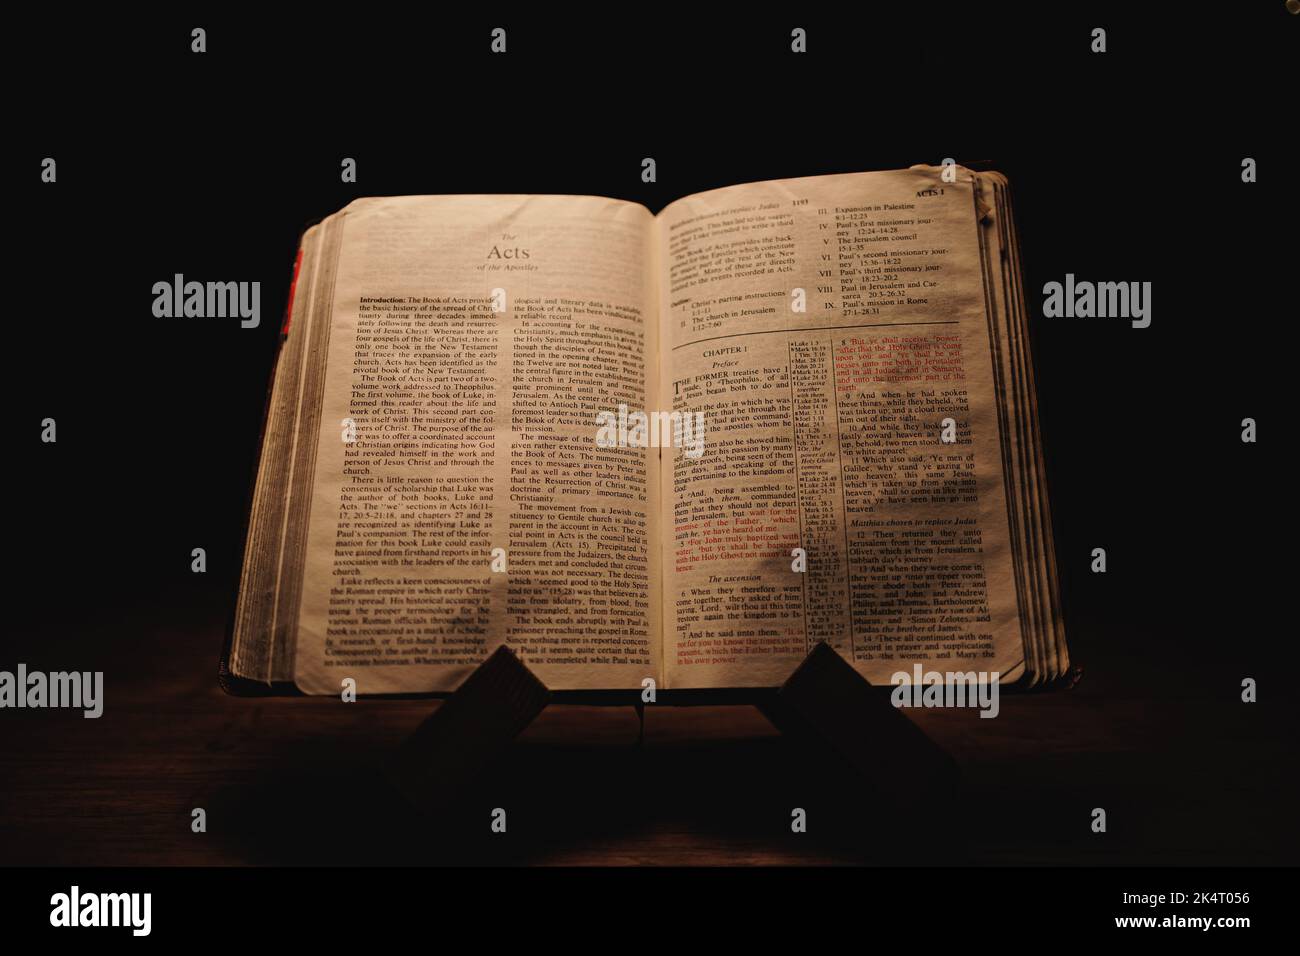 Un gros plan d'une vieille Bible historique ouverte sur les pages actes exposées dans une pièce sombre Banque D'Images